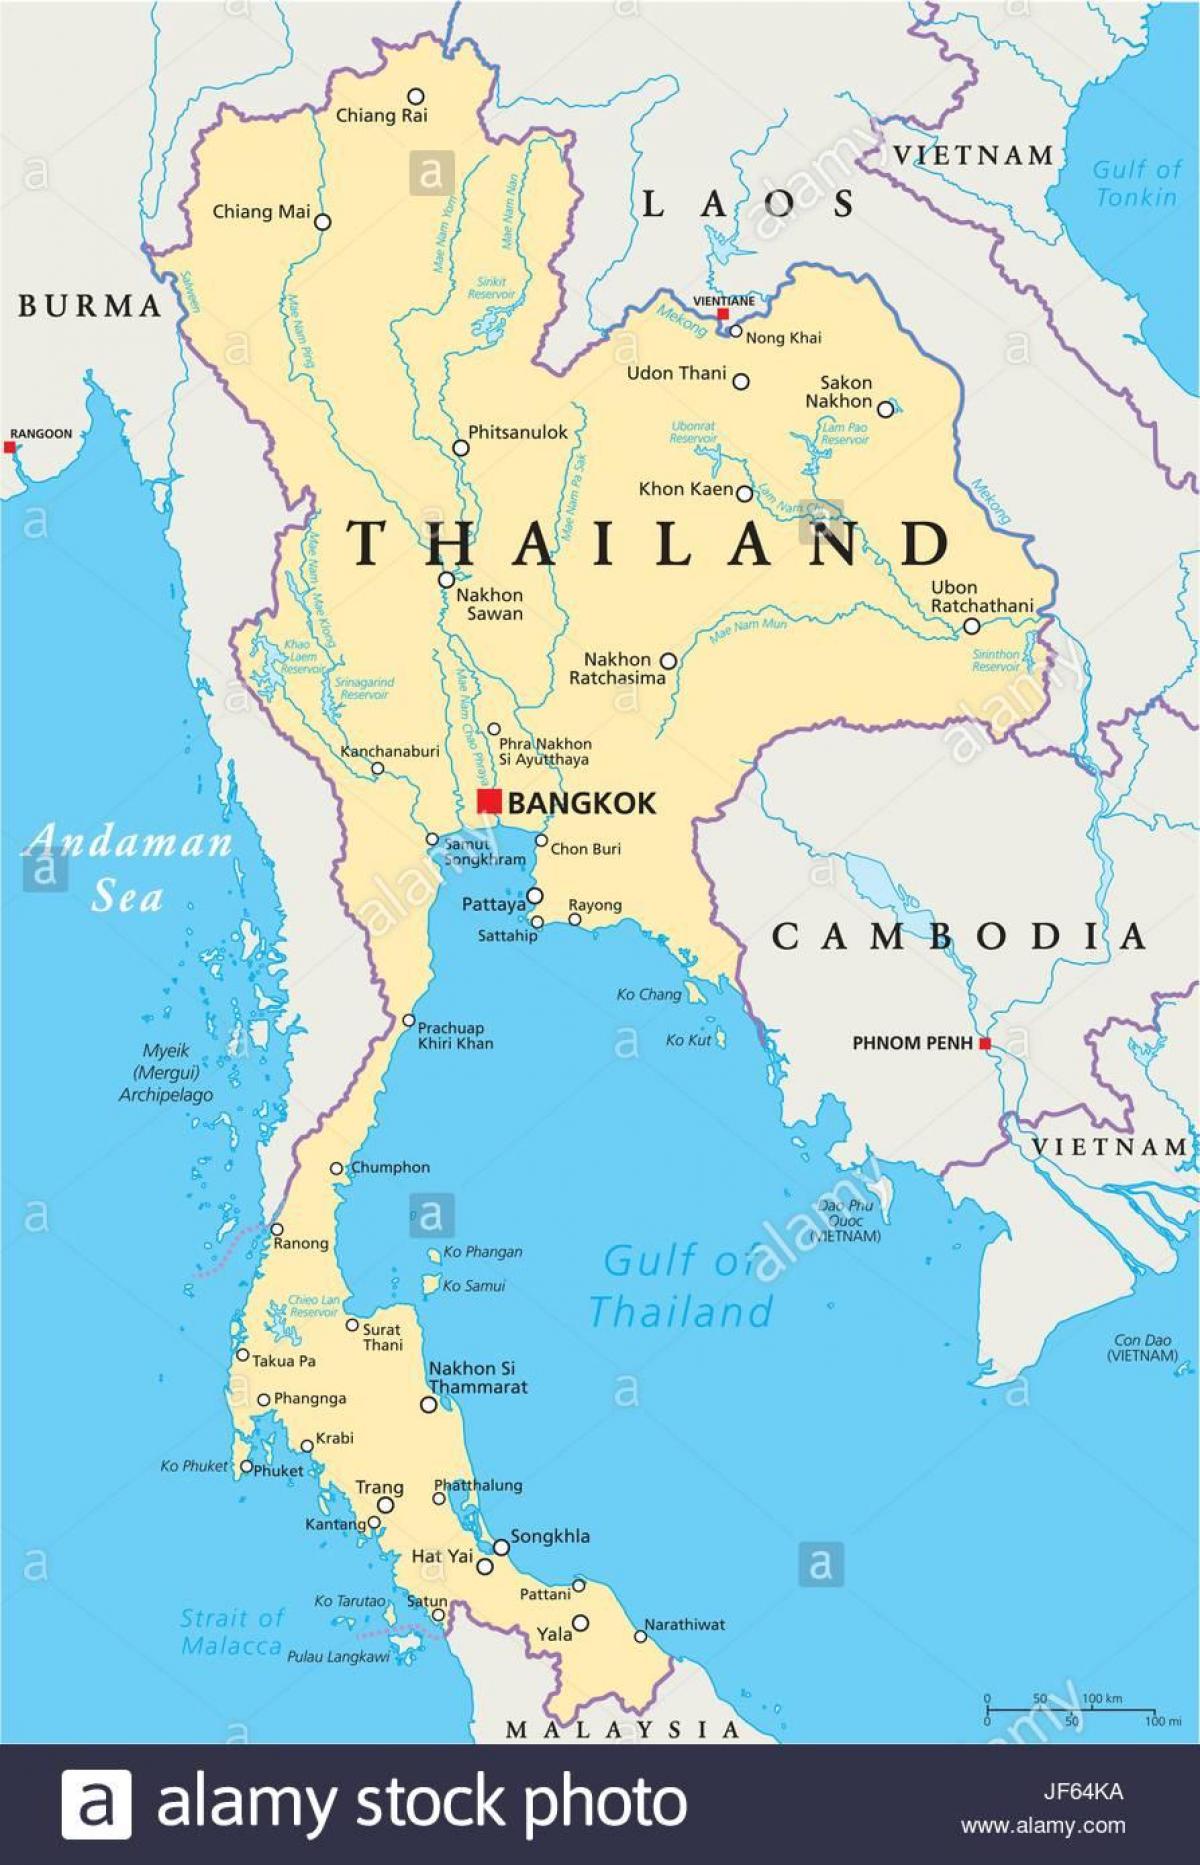 Бангкок на мапи света